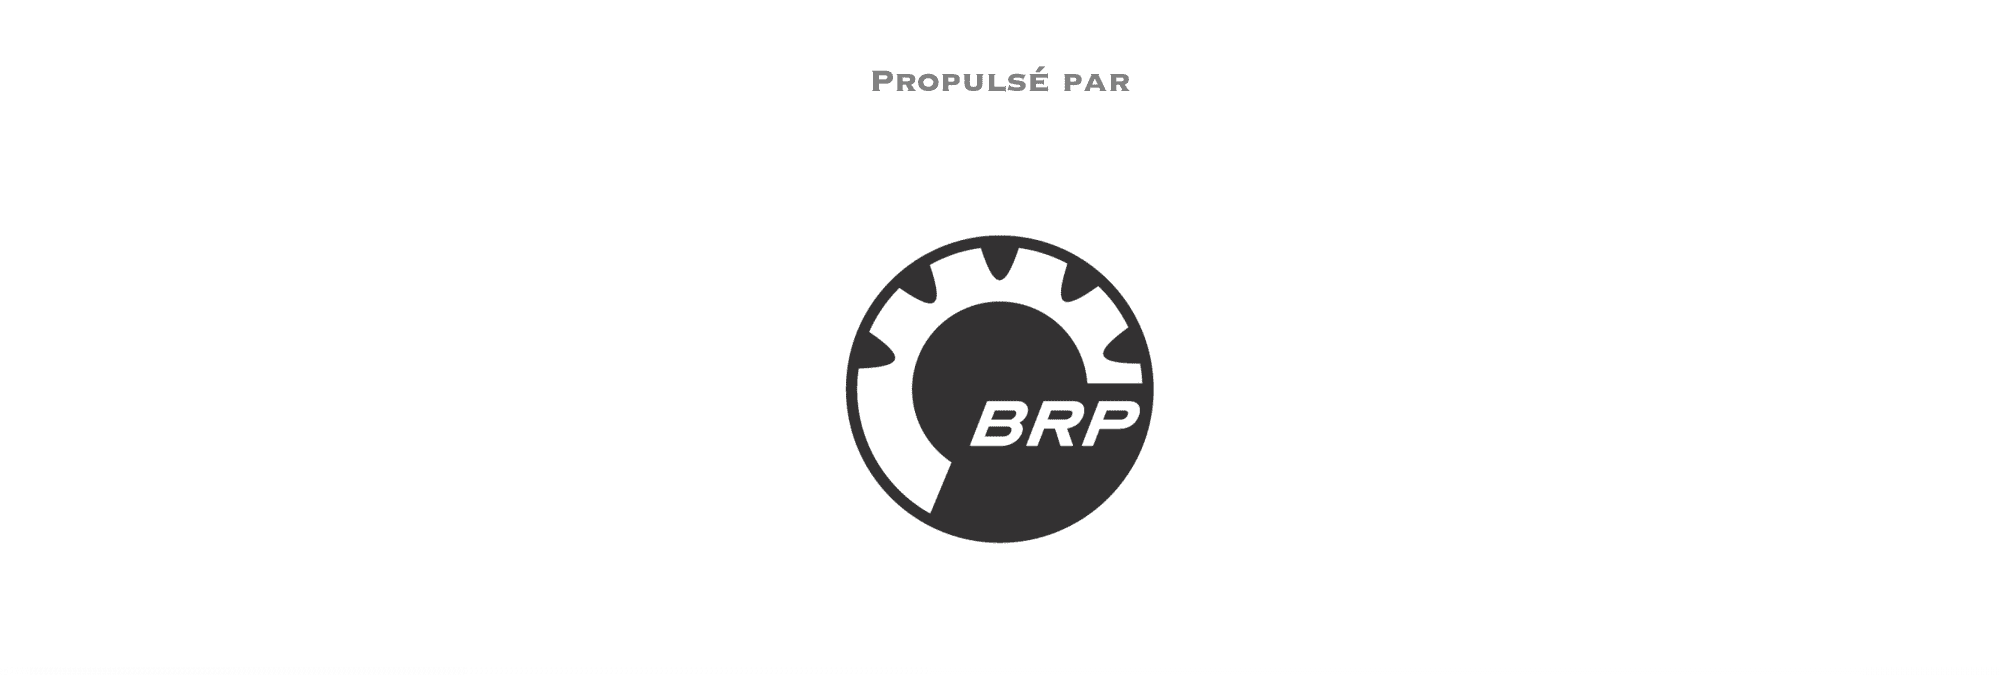 propulse par BRP